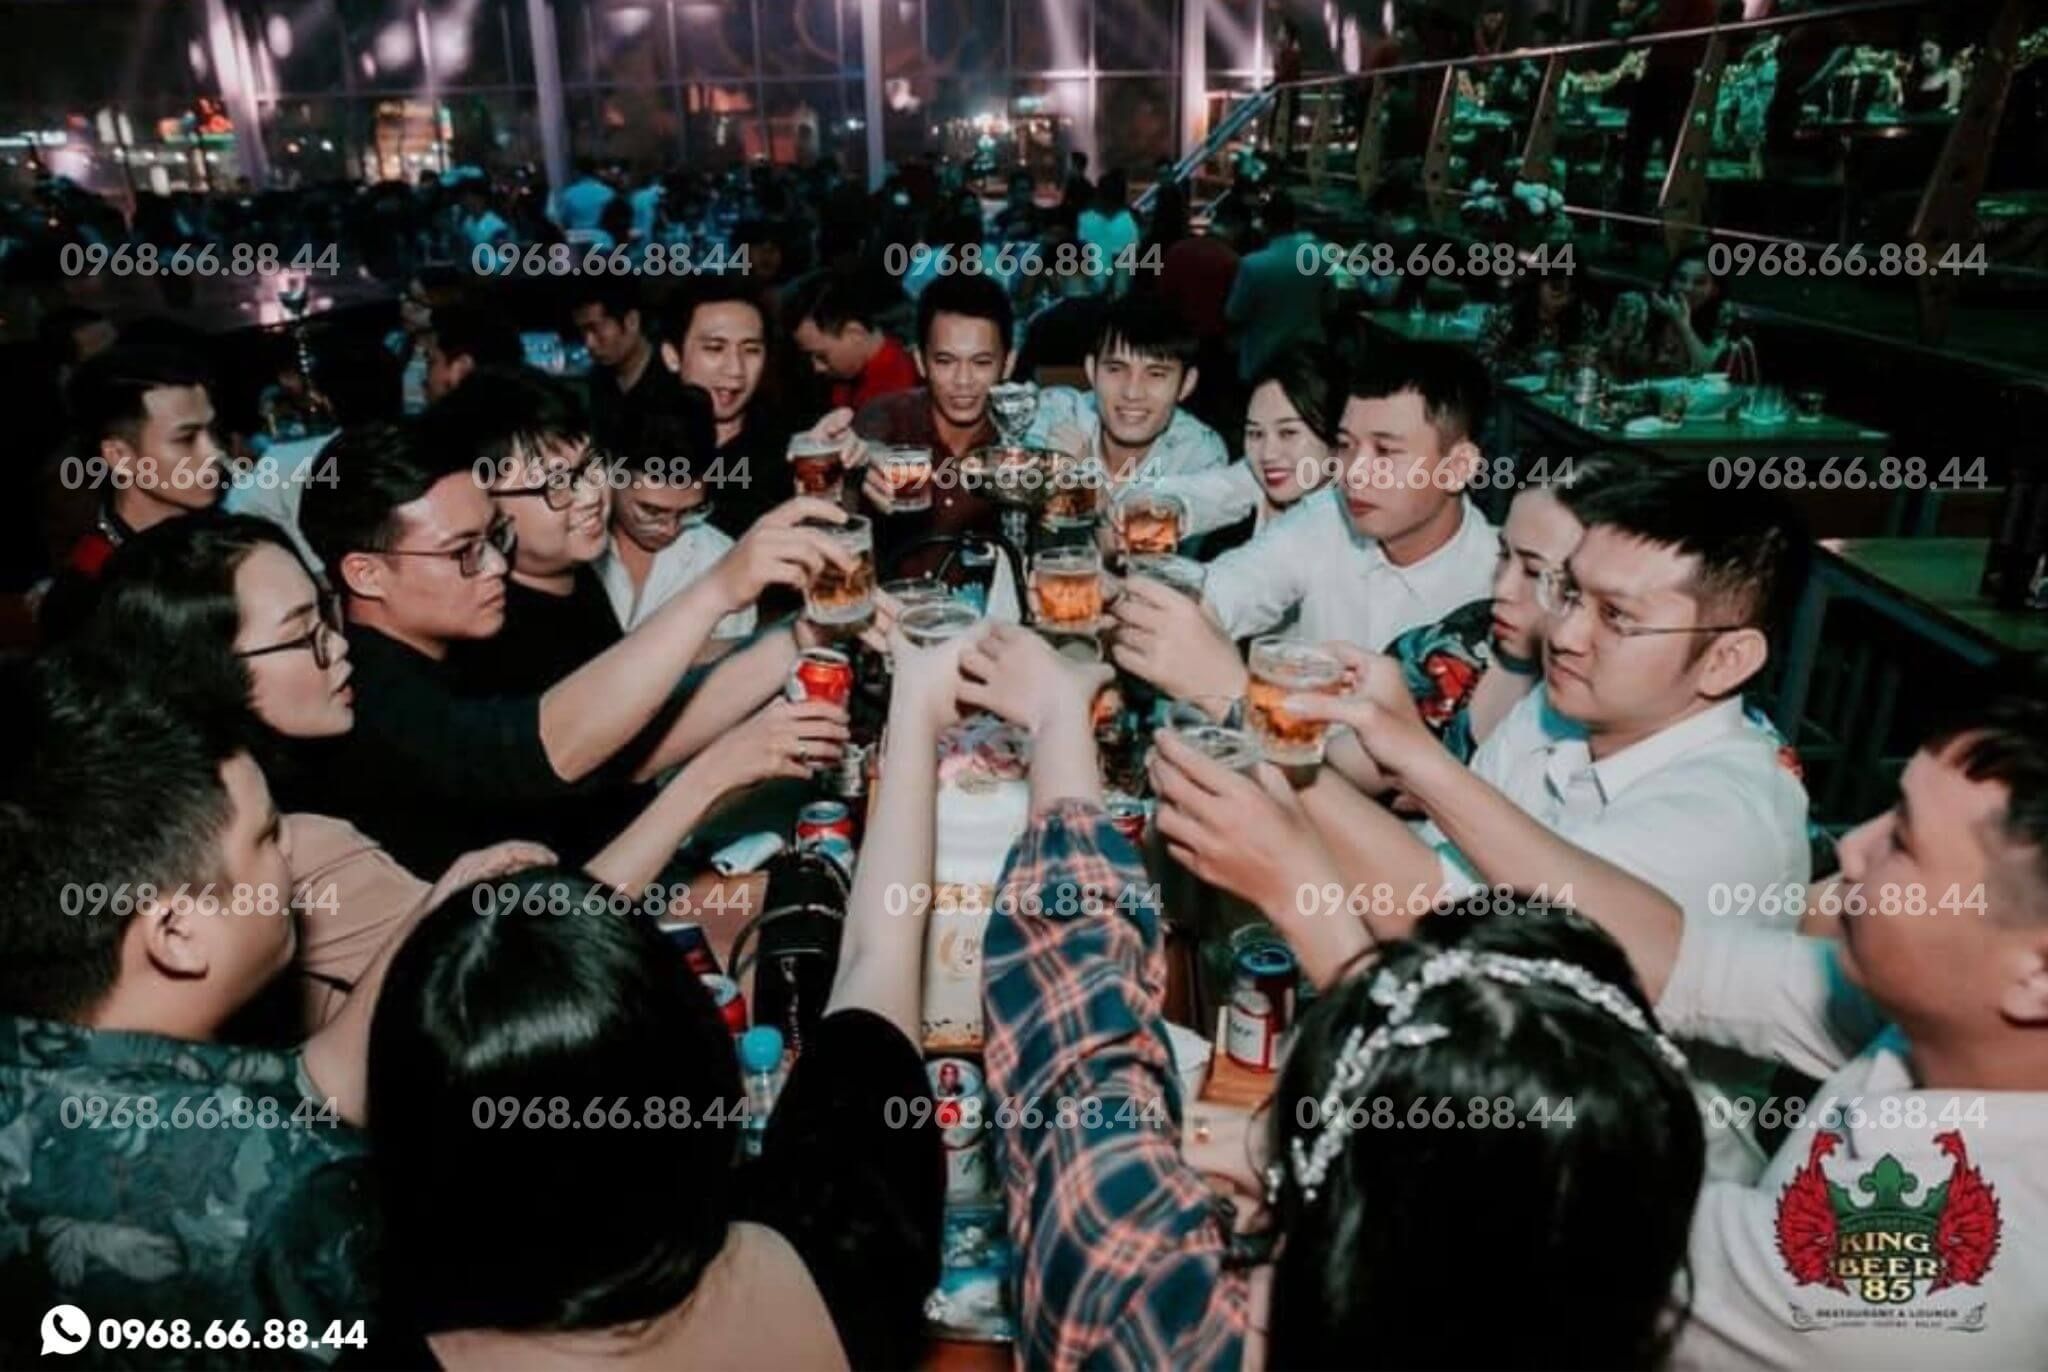 King Beer 85 - 333 Phạm Văn Đồng